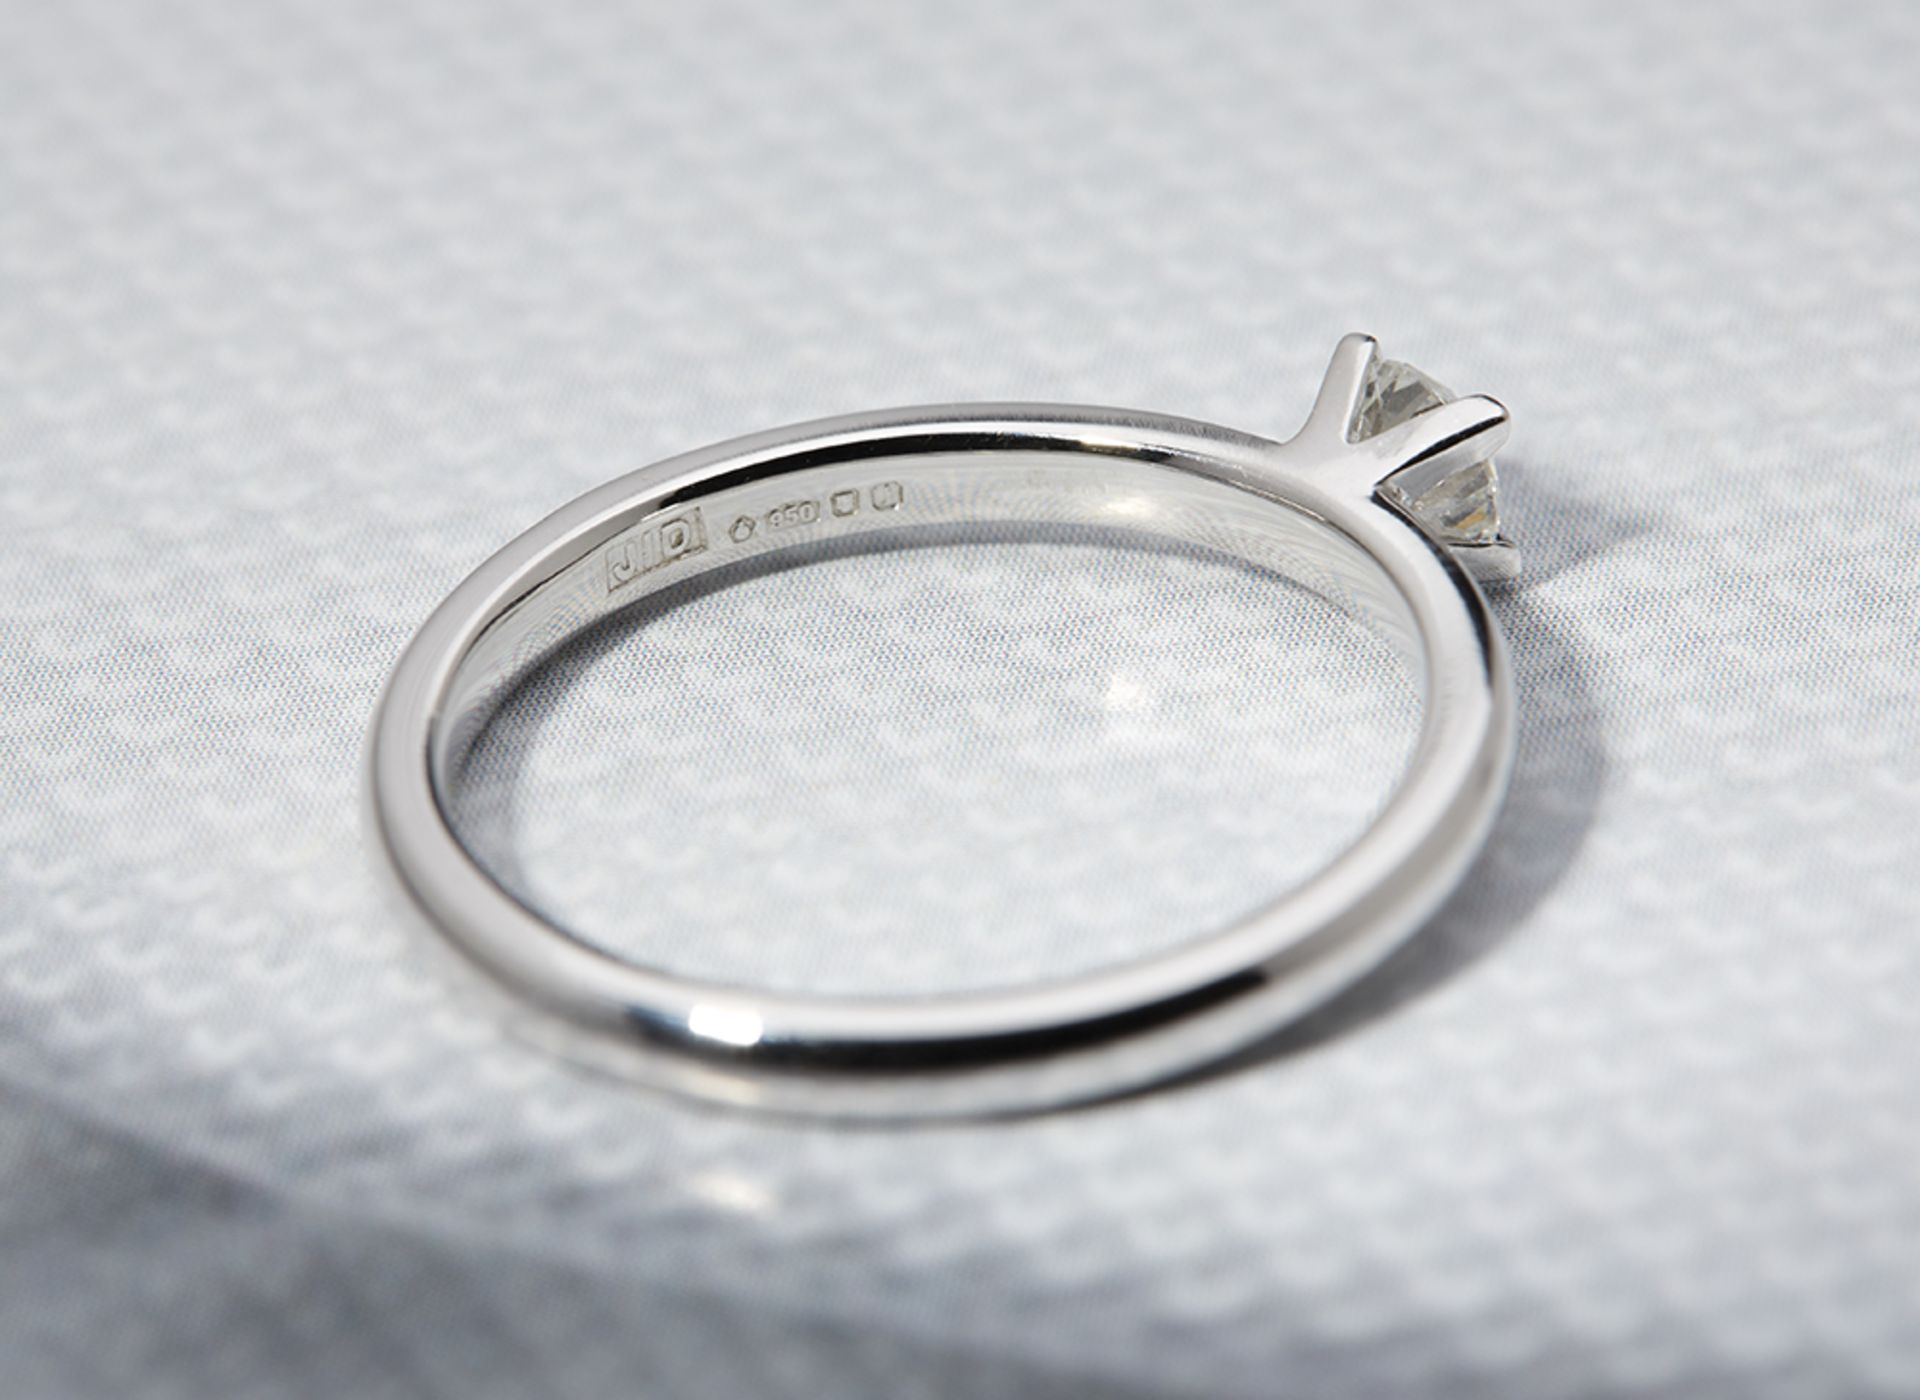 Platinum Round Brilliant Cut 0.25ct Diamond Ring - Image 3 of 4